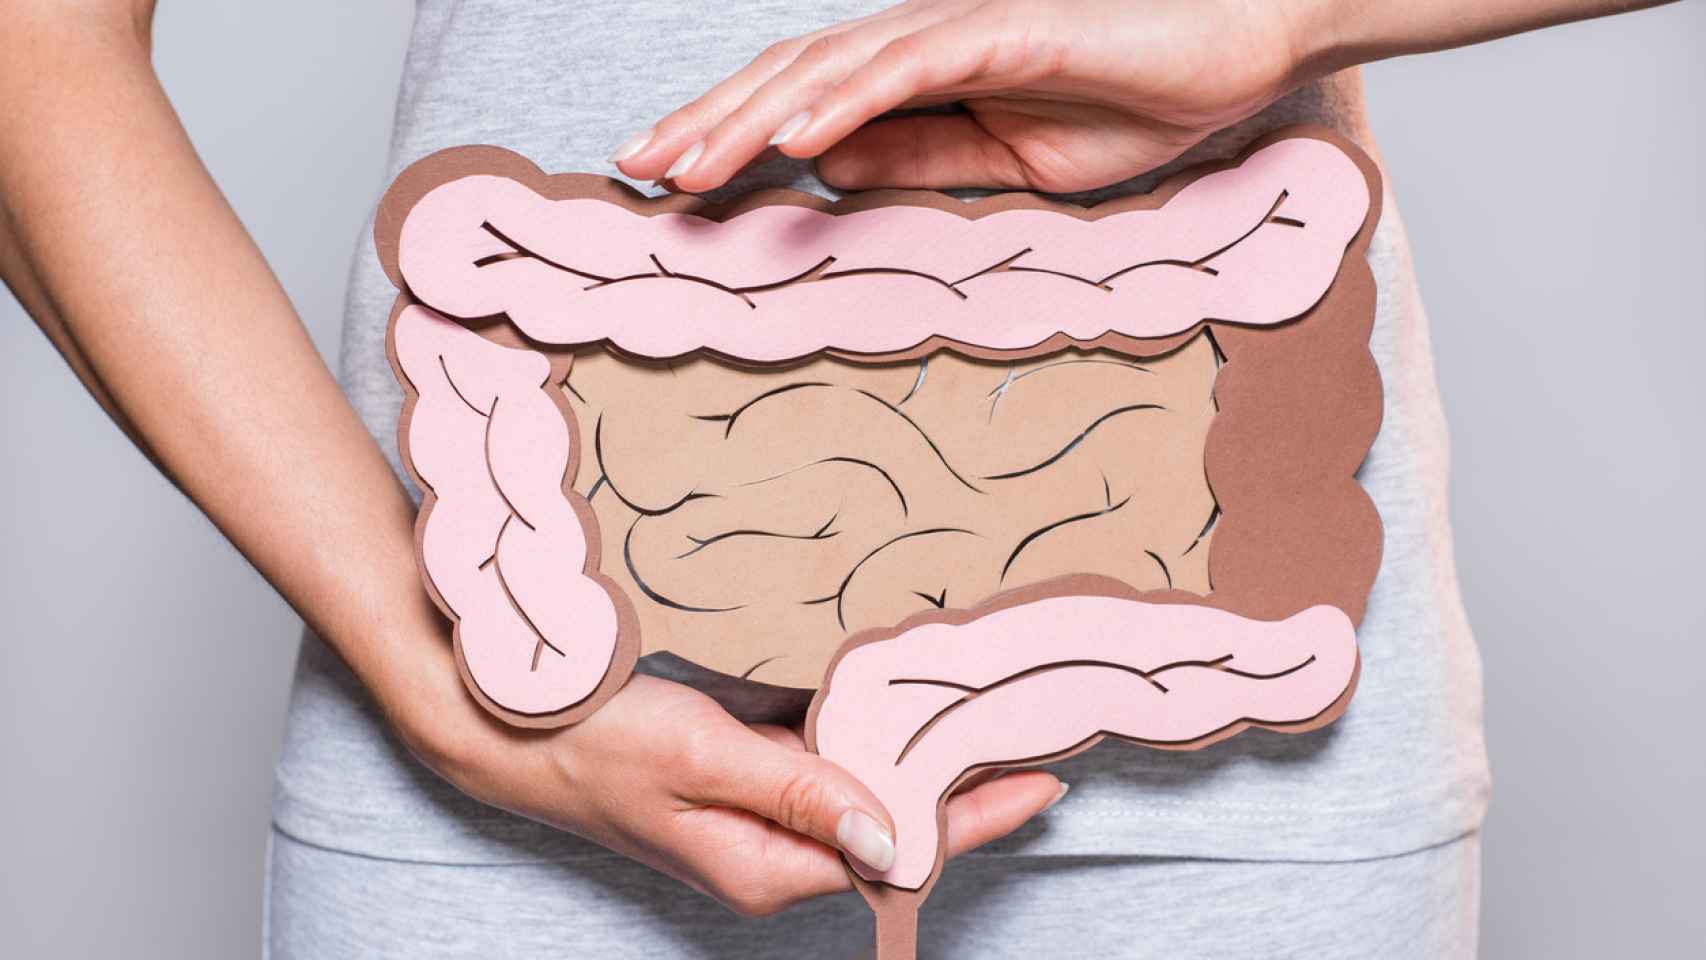 En el intestino ocurre la digestión y absorción de los alimentos.